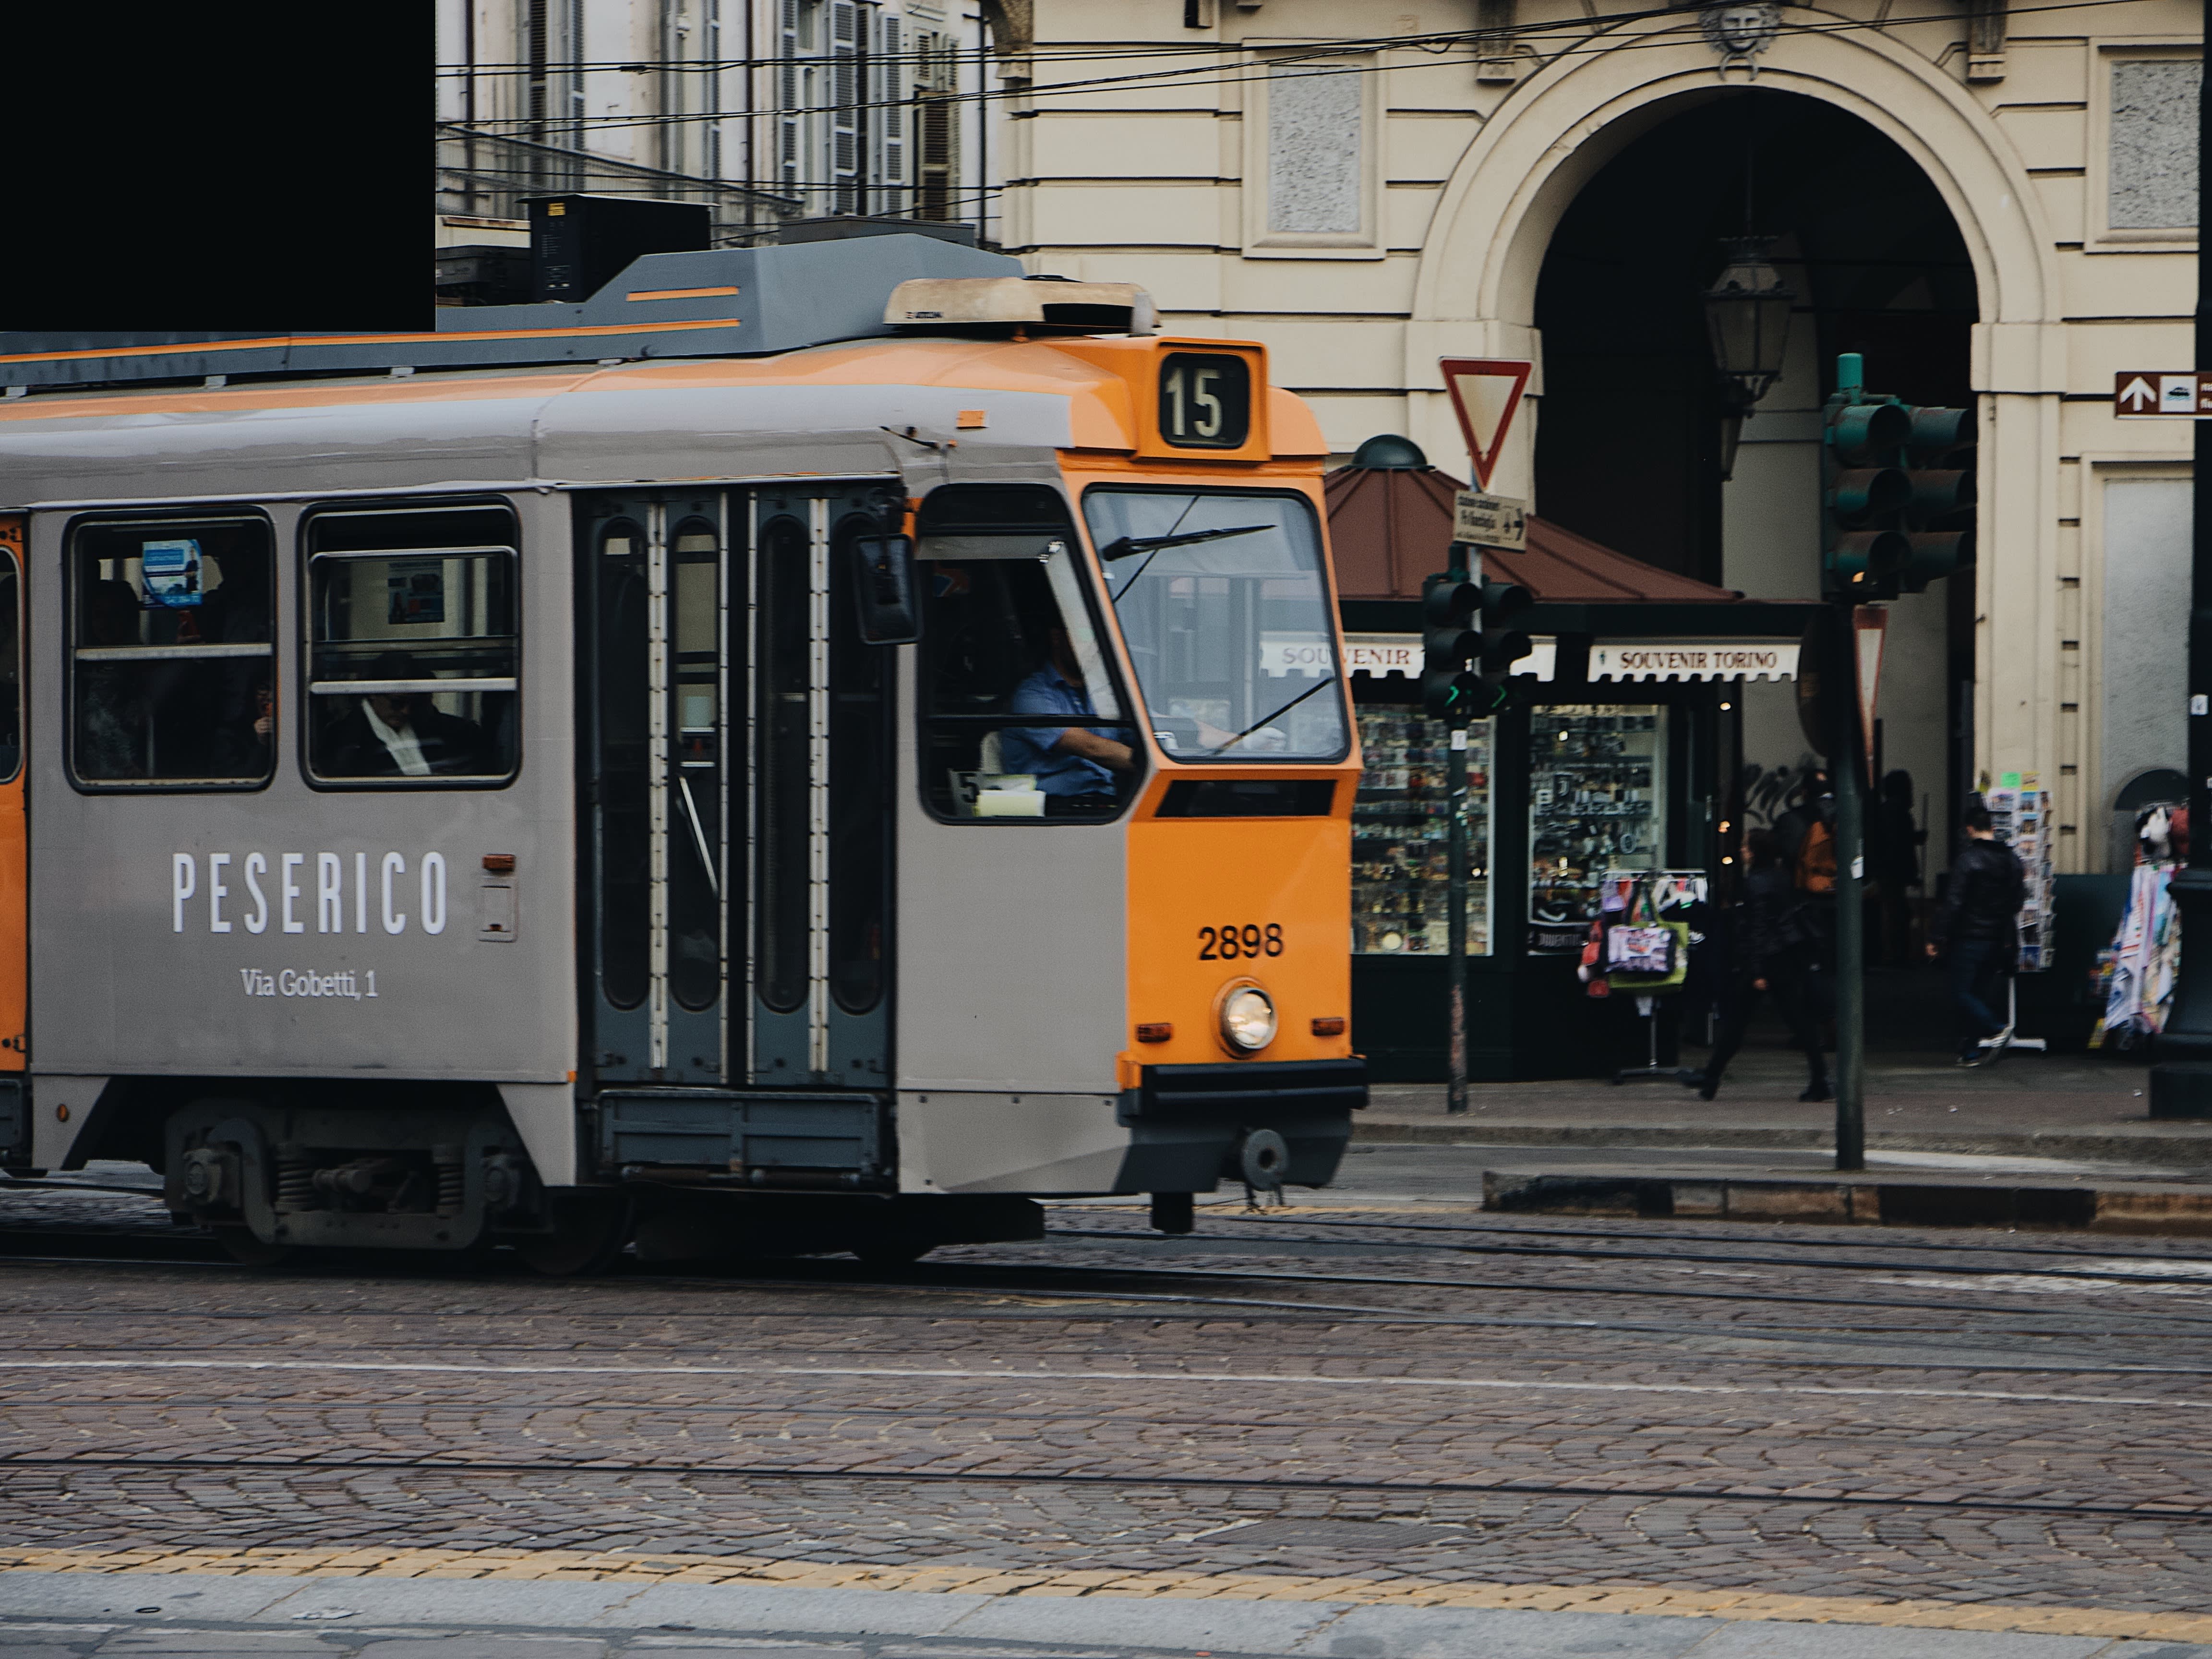 Tram in Turin on an empty street